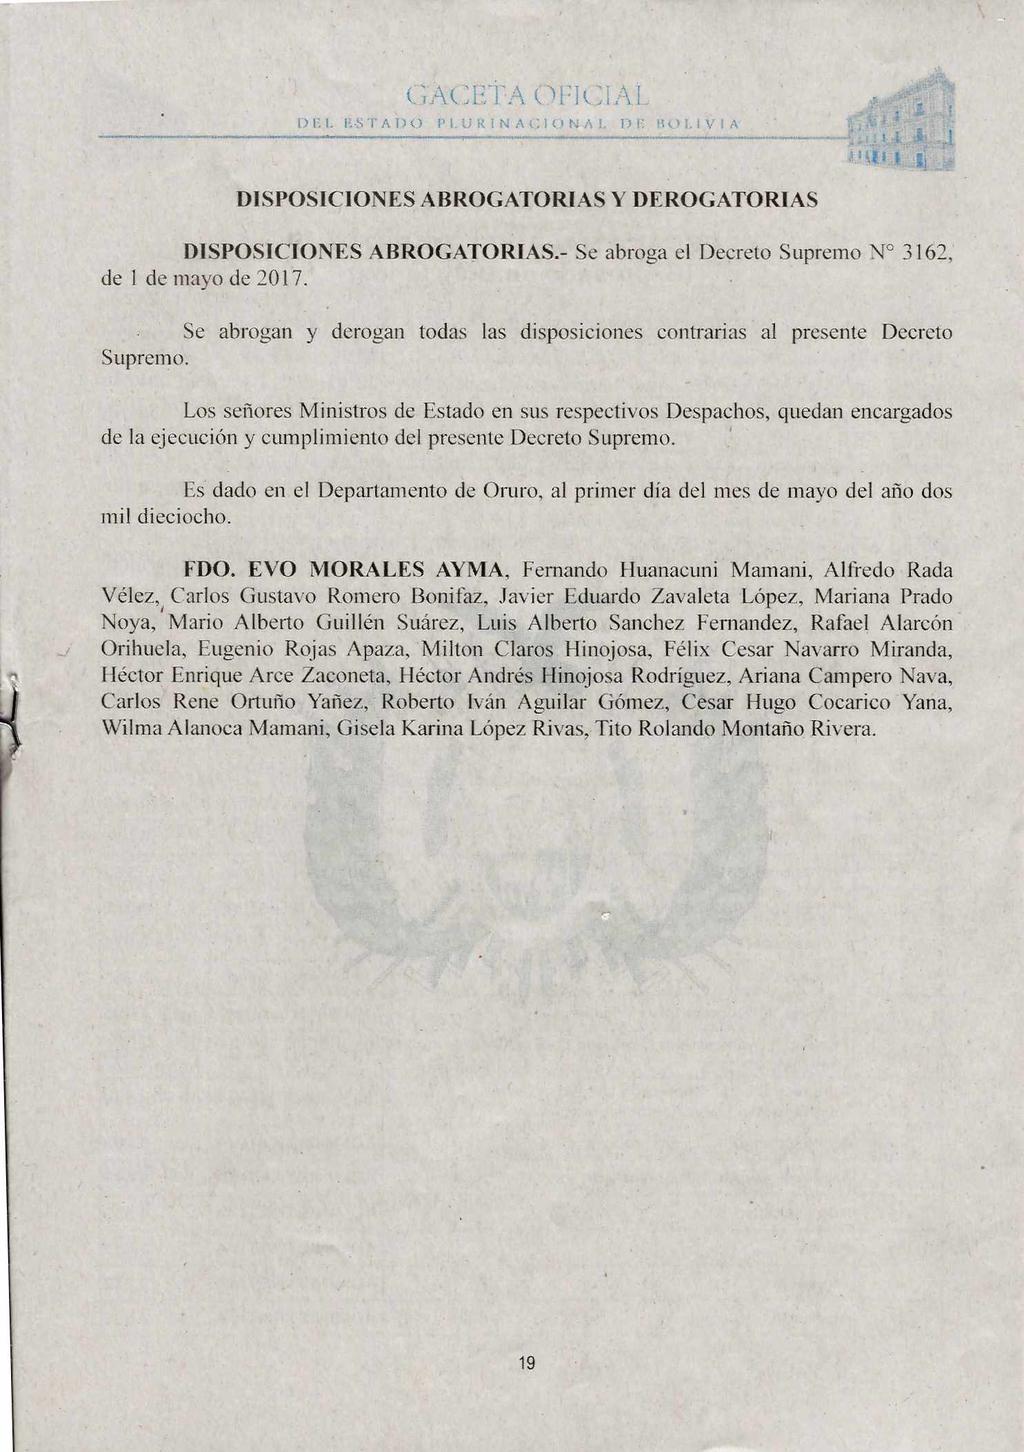 GACETA 01:1(.:1A1. PLURINACIONAL 1) BOLIVIA DISPOSICIONES ABROGATORIAS Y DEROGATORIAS DISPOSICIONES ABROGATORIAS.- Se abroga el Decreto Supremo N 3162, de 1 de mayo de 2017.